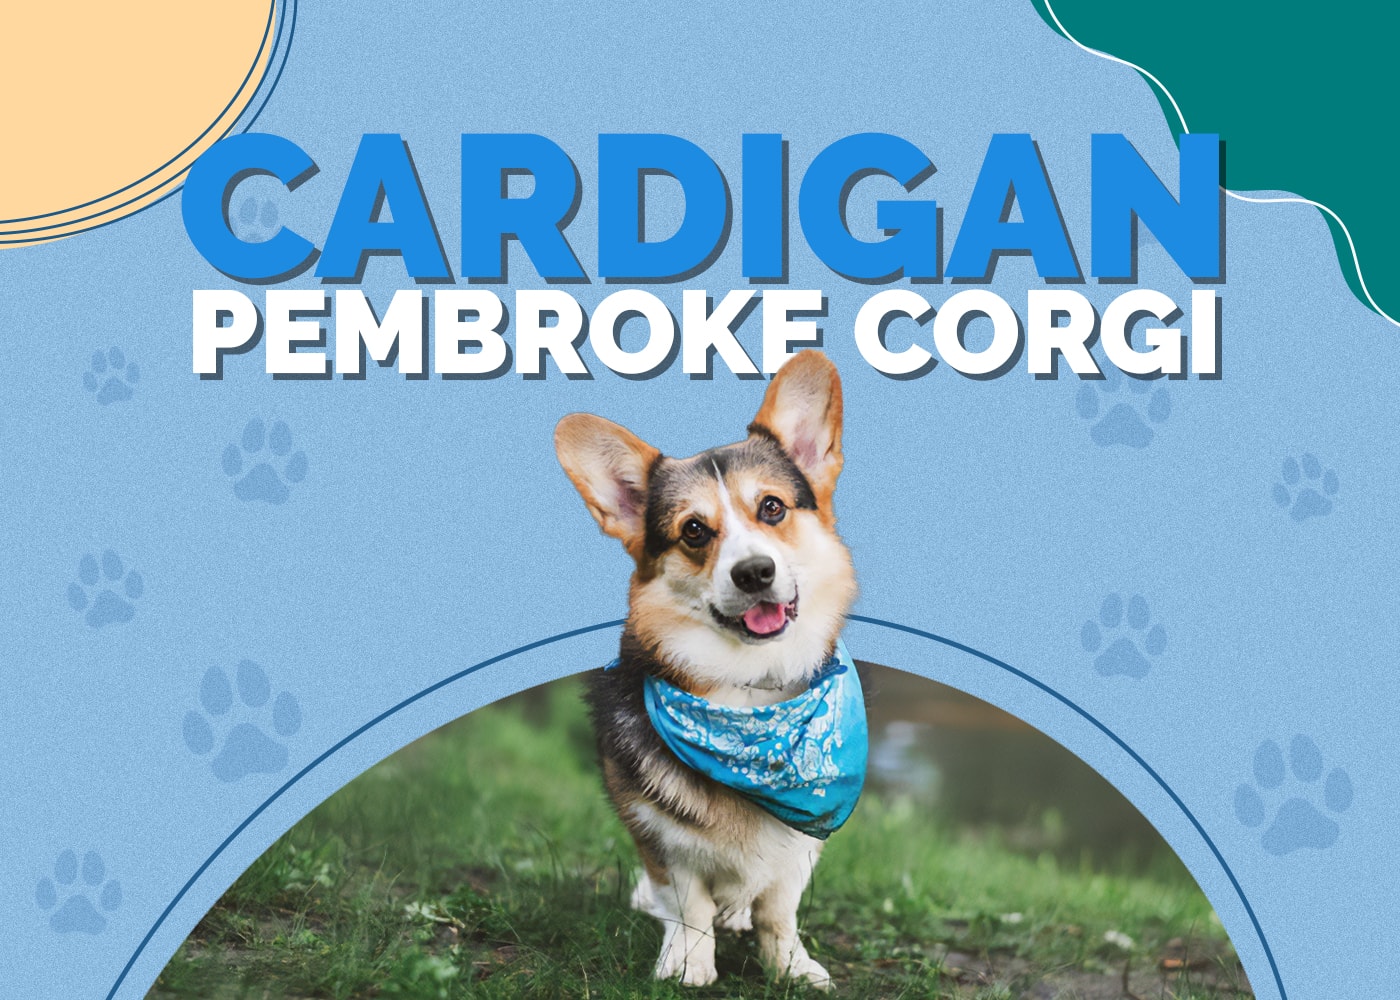 Cardigan Pembroke Corgi Mix